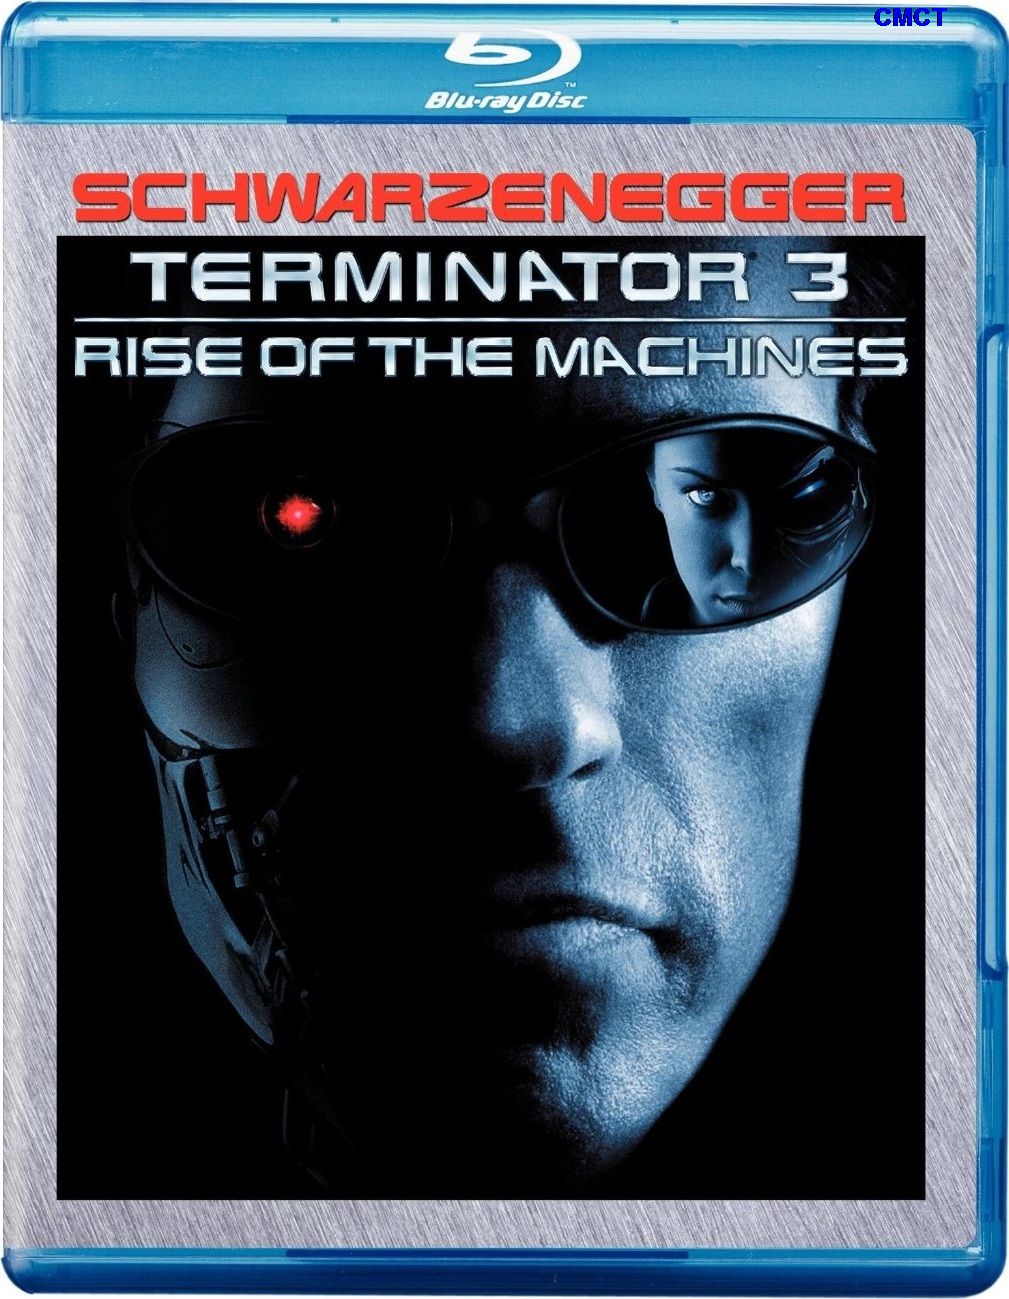 终结者3: 机器的觉醒  [DIY国语次世代] [简/繁/国配/中英双语特效字幕/PIP中字/双导评中字] Terminator.3.Rise.of.the.Machines.2003.Blu-ray.1080p.AVC.TrueHD5.1-CMCT [36.17 GB]-1.jpg